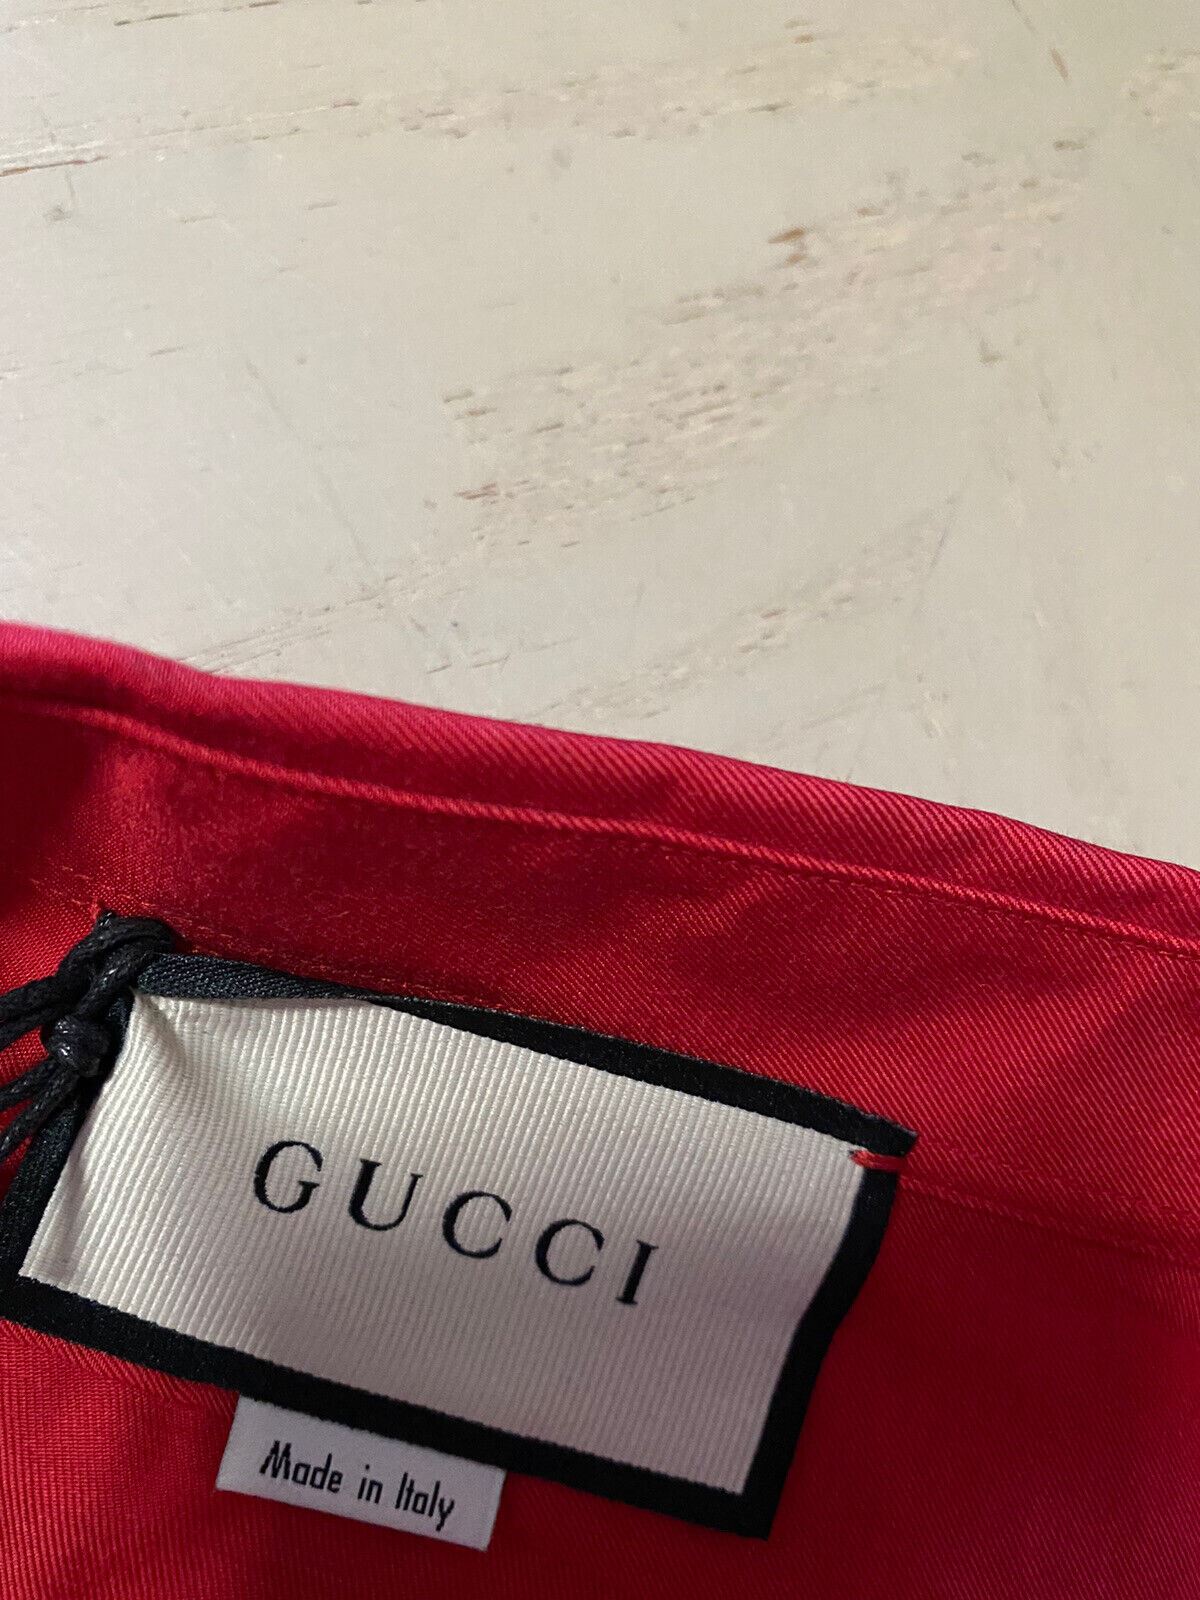 Новая мужская классическая рубашка Gucci с длинным рукавом стоимостью 1200 долларов DK, бордовый размер L, Италия